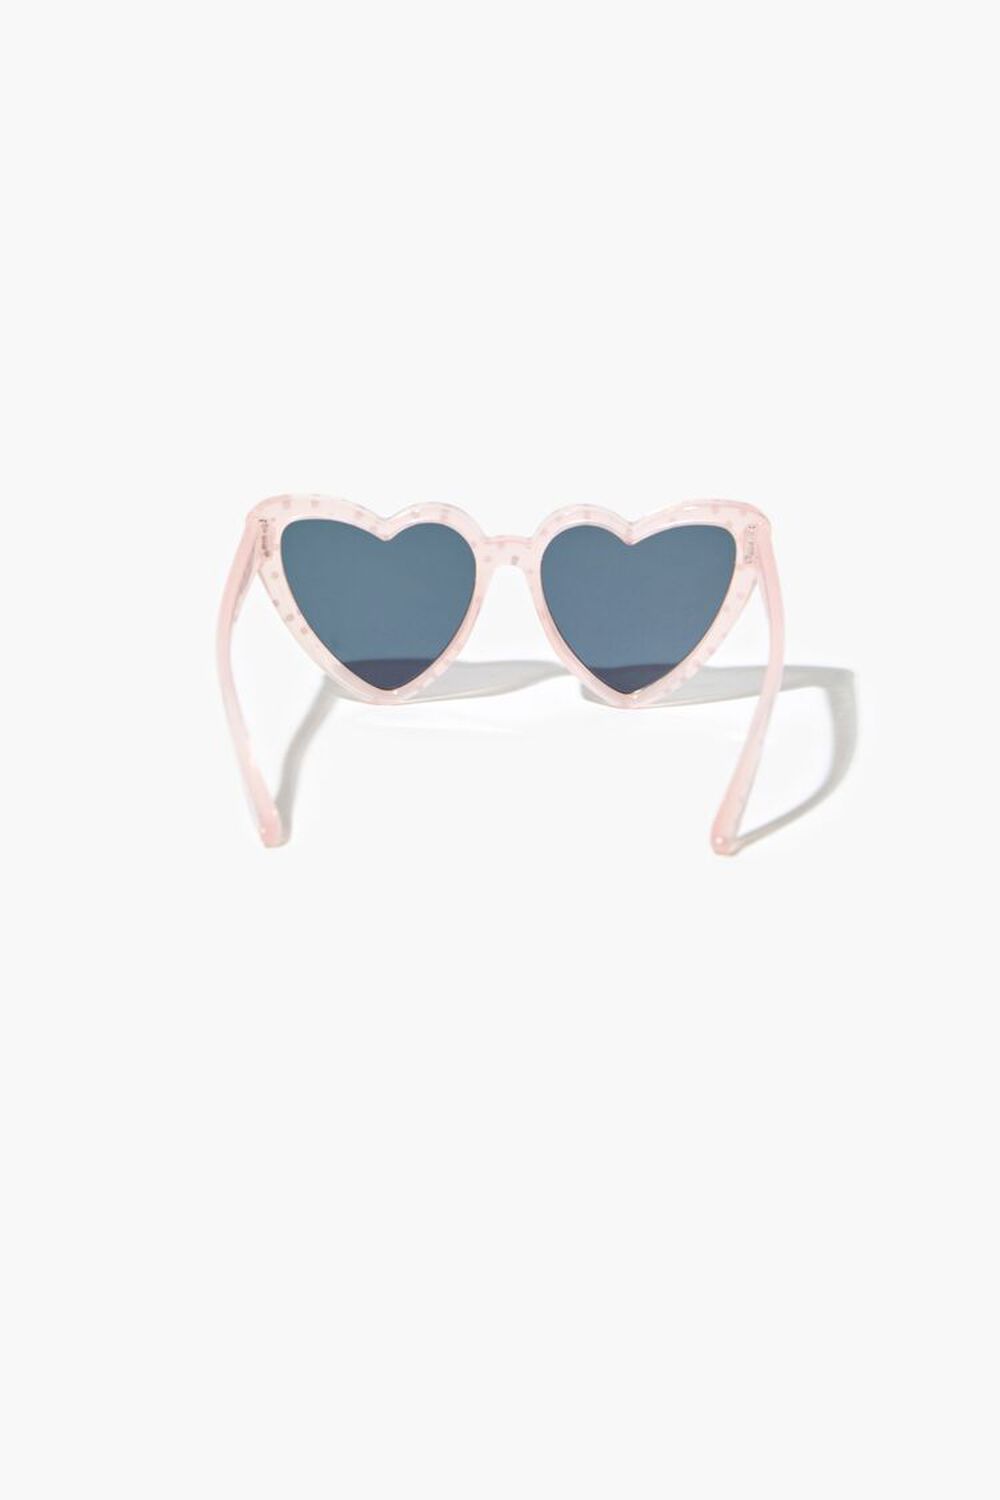 Polka Dot Heart-Shaped Sunglasses, image 3